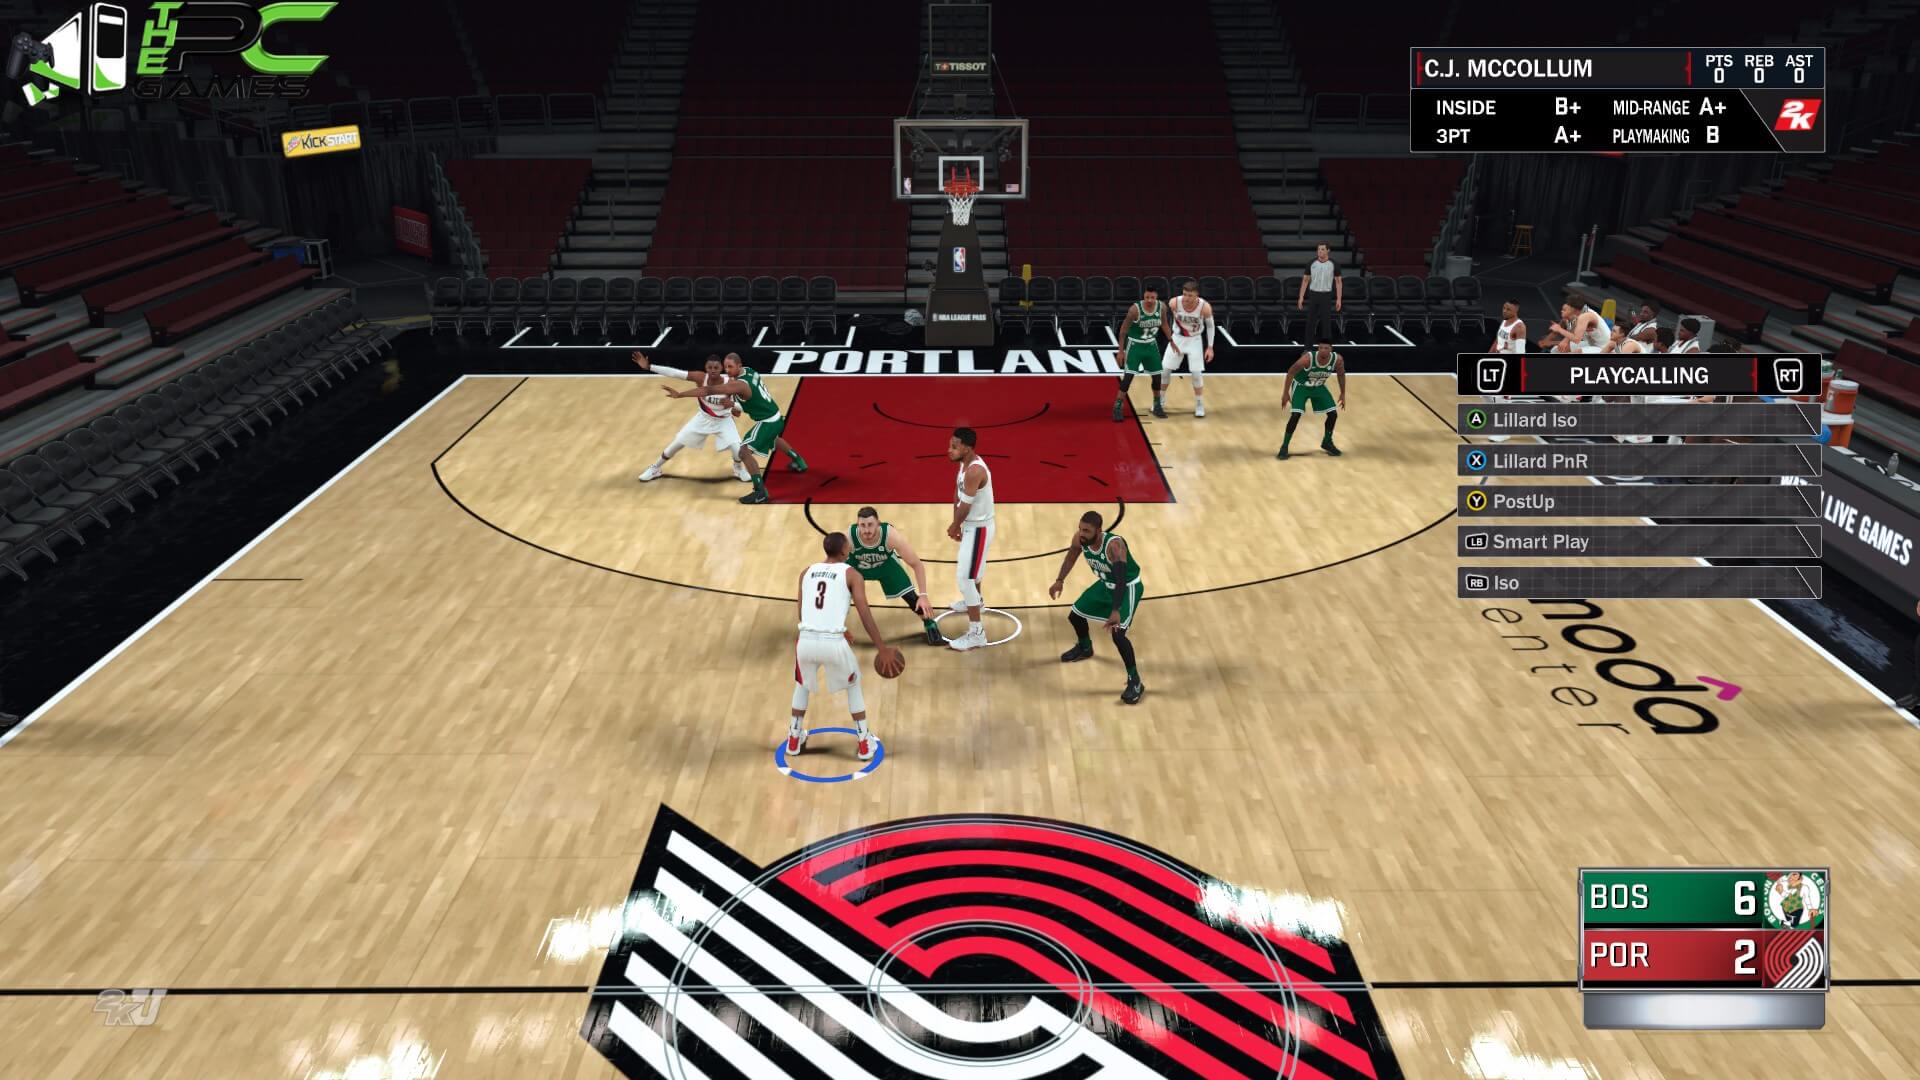 NBA 2K18 PC Game Free Download